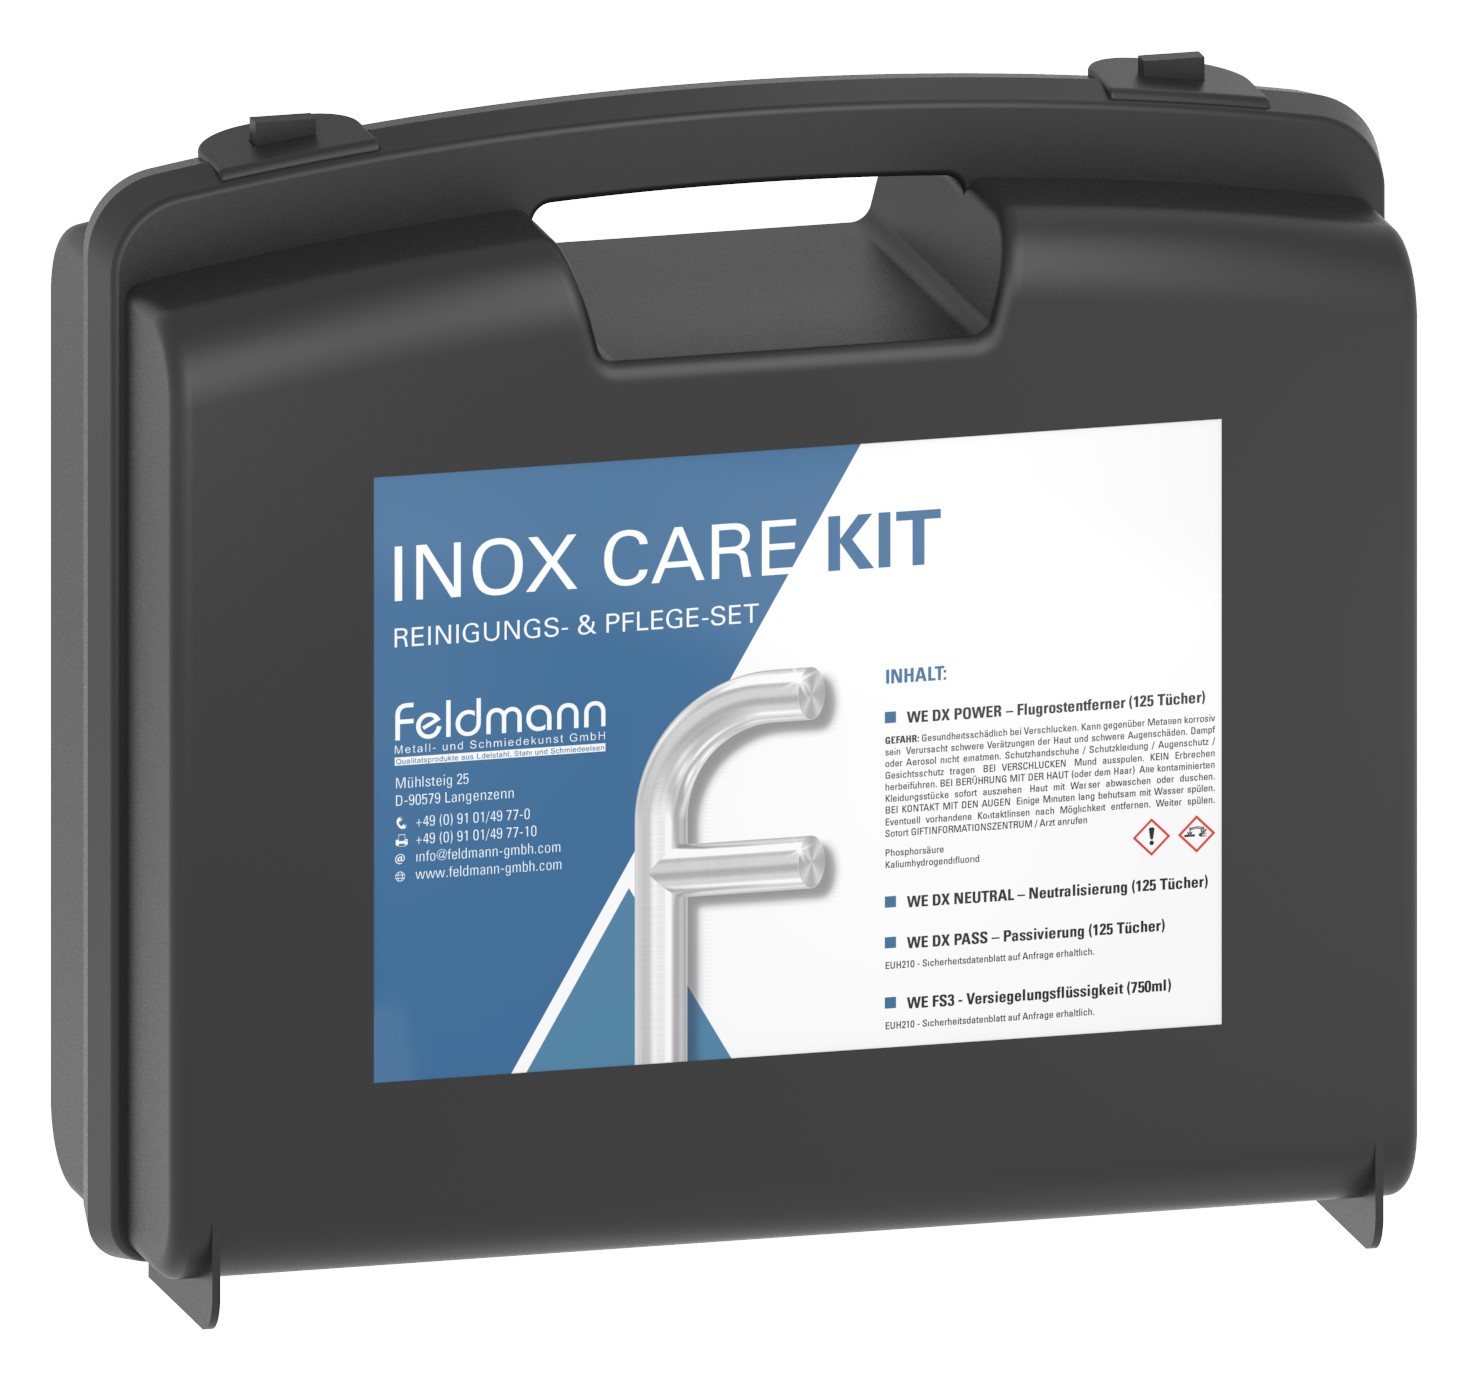 INOX CARE KIT − Reinigungs- & Pflegeset für Edelstahl